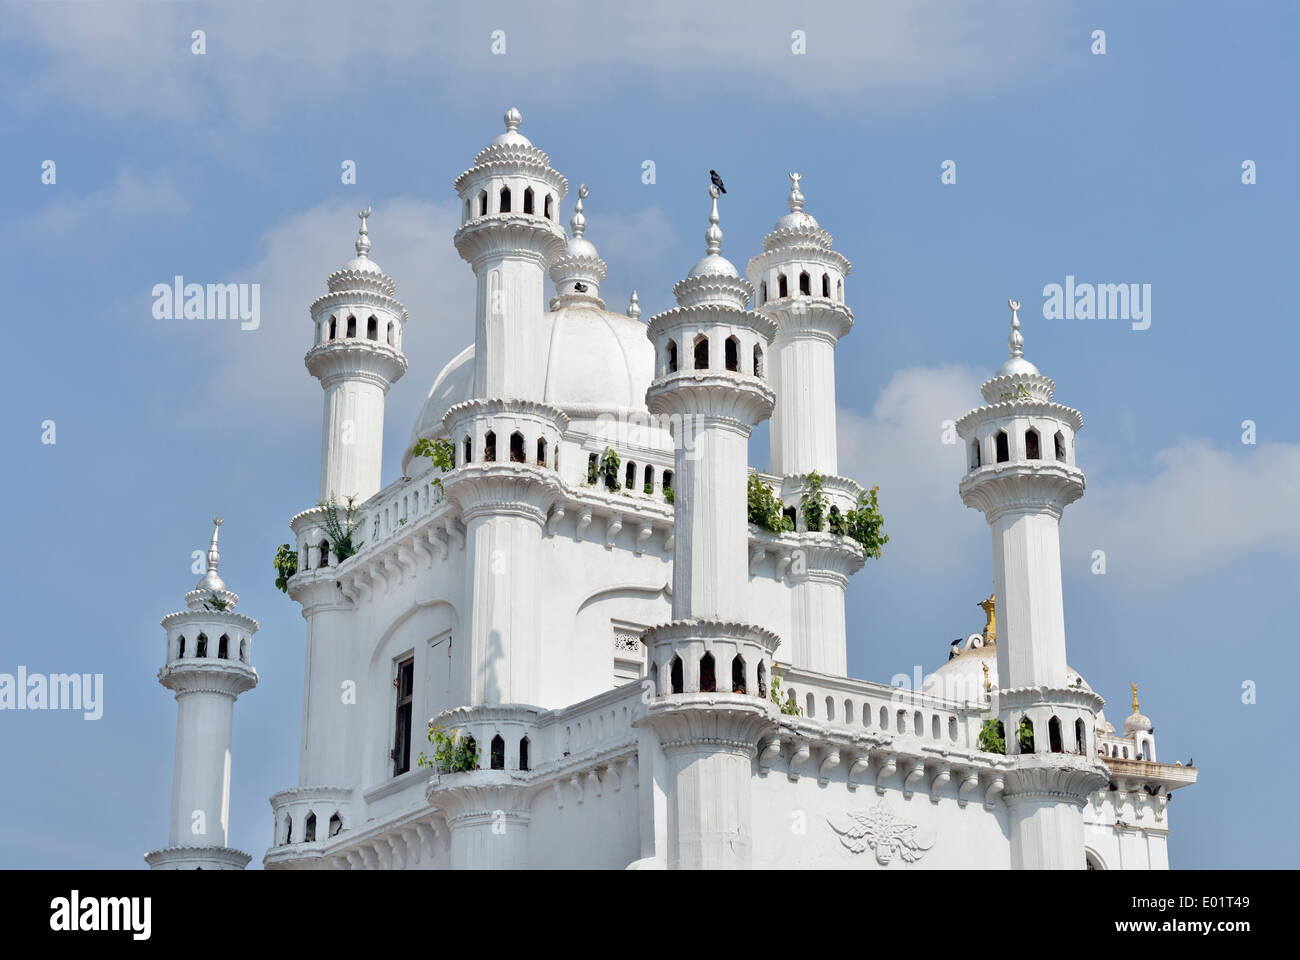 Мечеть шри ланка. Шри Ланка мечеть. Мечеть в Коломбо. Красная мечеть Коломбо. Мечеть в Шри Ланке Бретон Тарант.